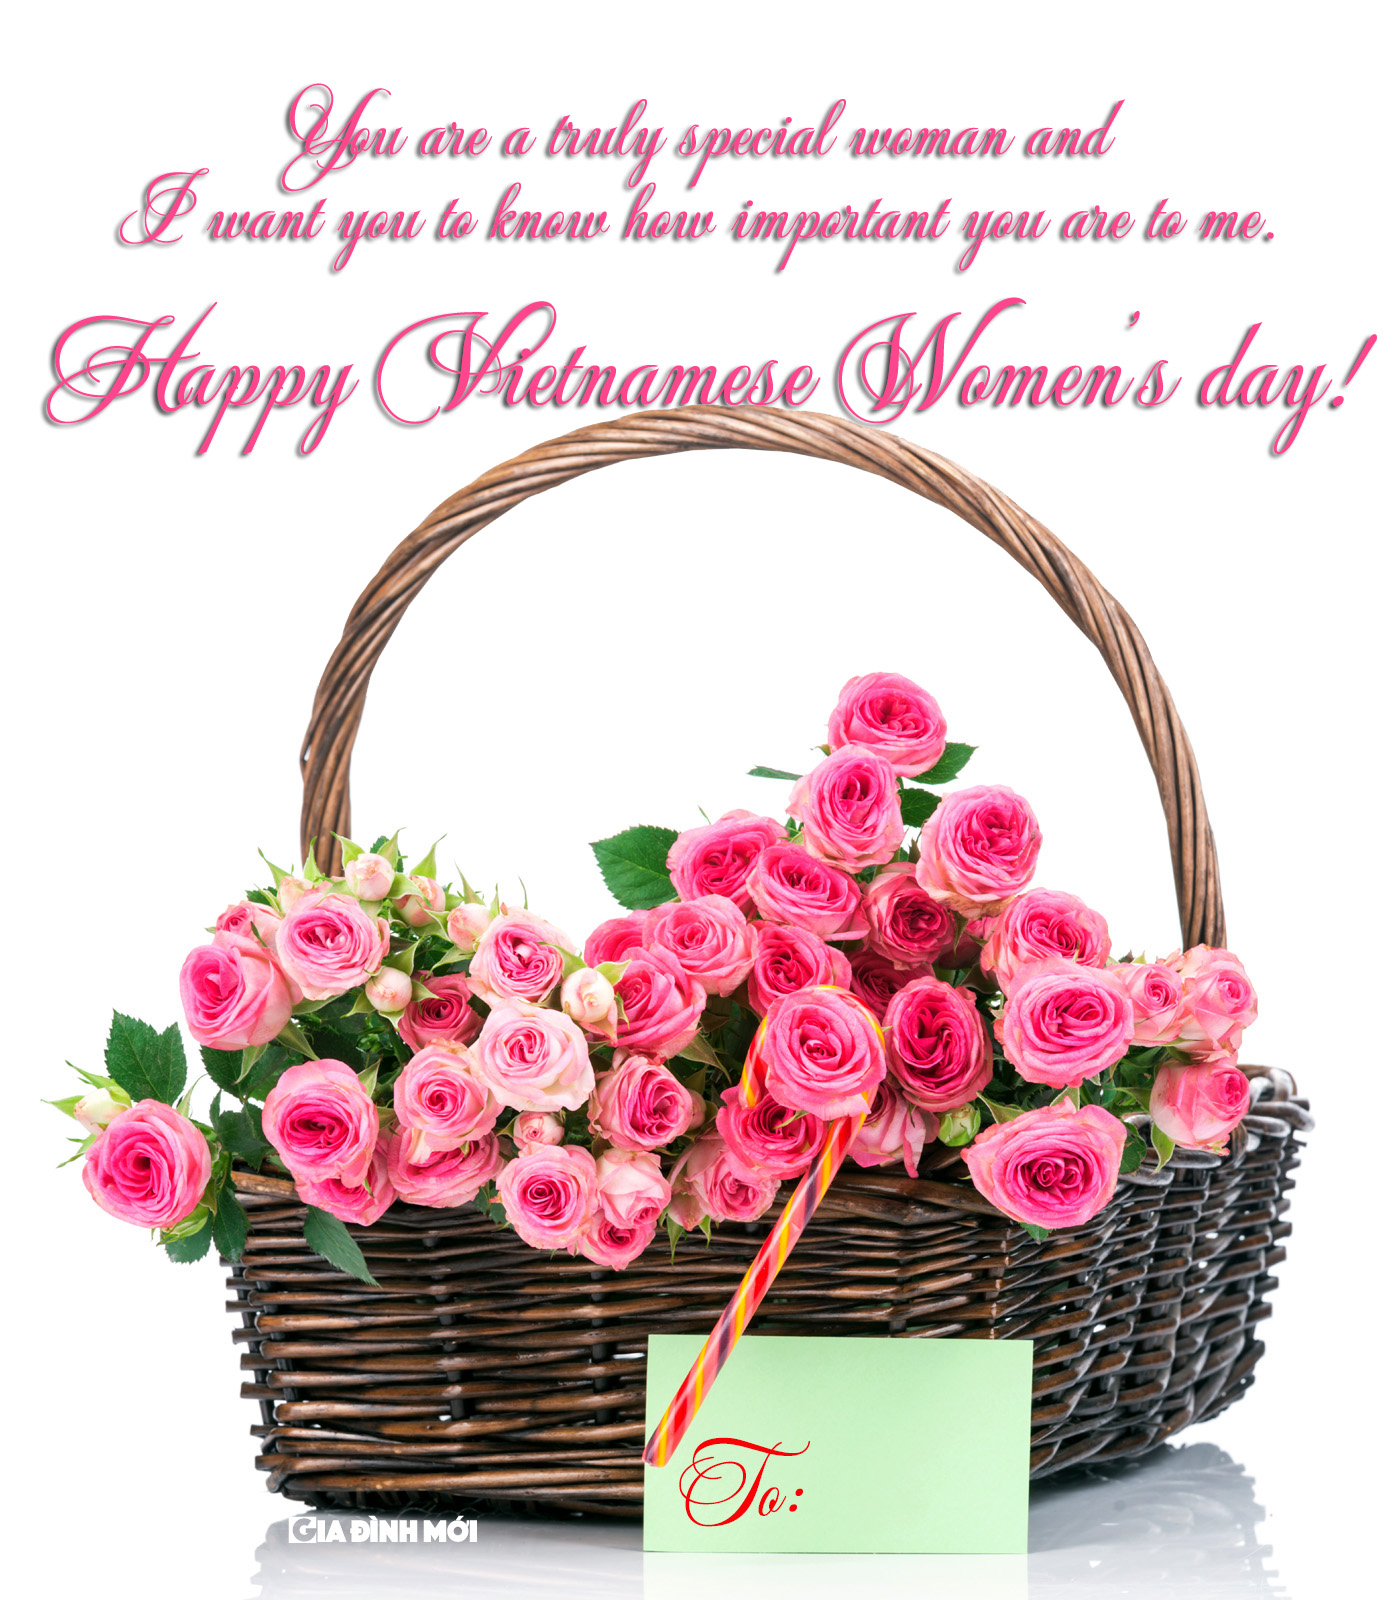   Em là một người phụ nữ thực sự đặc biệt  Anh muốn em biết rằng em quan trọng với anh nhường nào  Chúc mừng ngày Phụ nữ Việt Nam!  